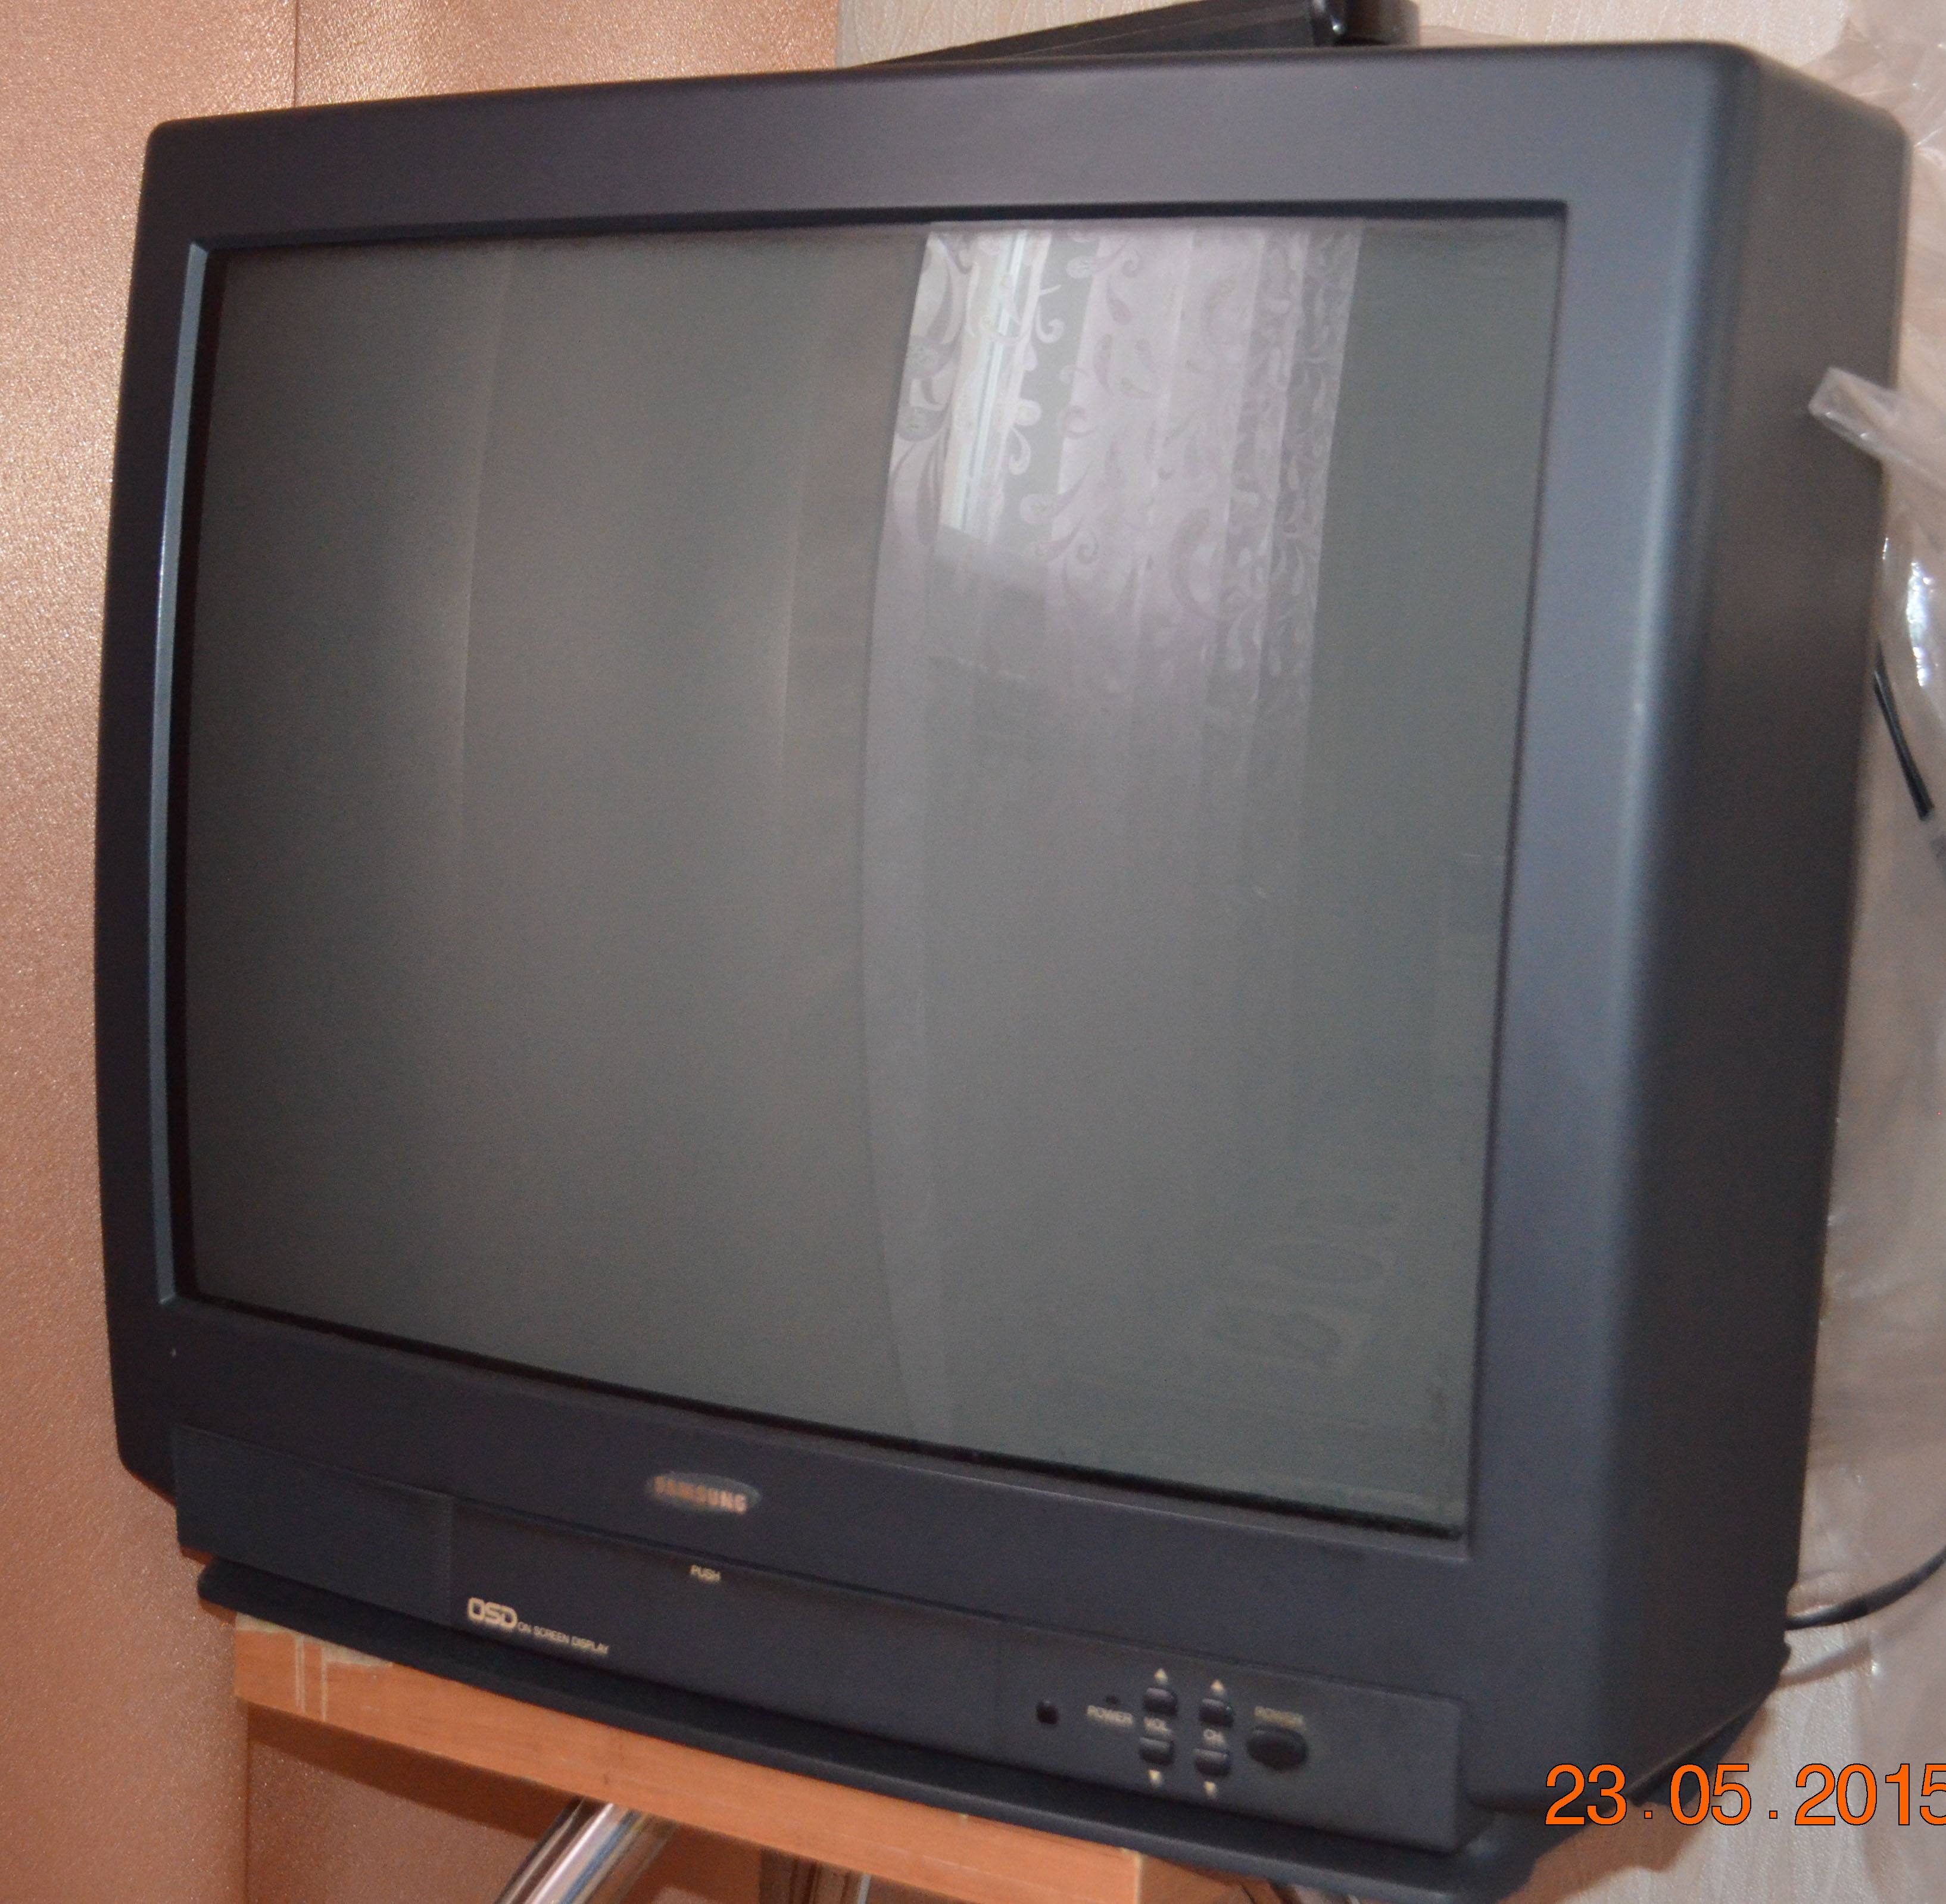 Продам телевизор самсунг. Ламповый телевизор самсунг 2009 года. Телевизор самсунг 2007. Телевизор самсунг 2007 года модели. Телевизор Samsung 2004.